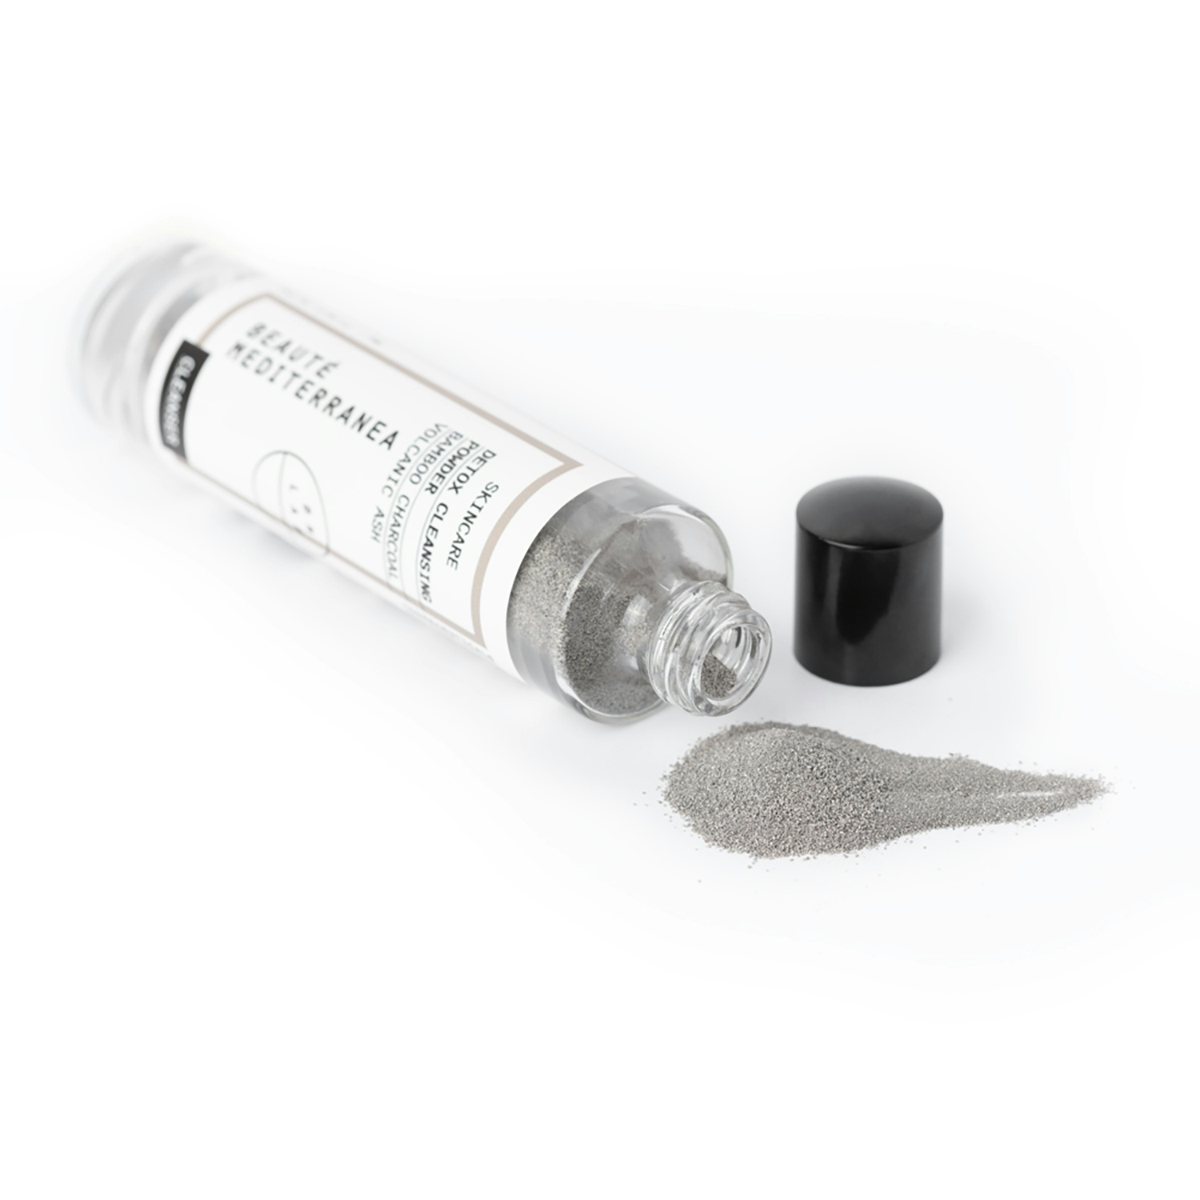 Limpiador facial en polvo (anhidro) son suave acción exfoliante.